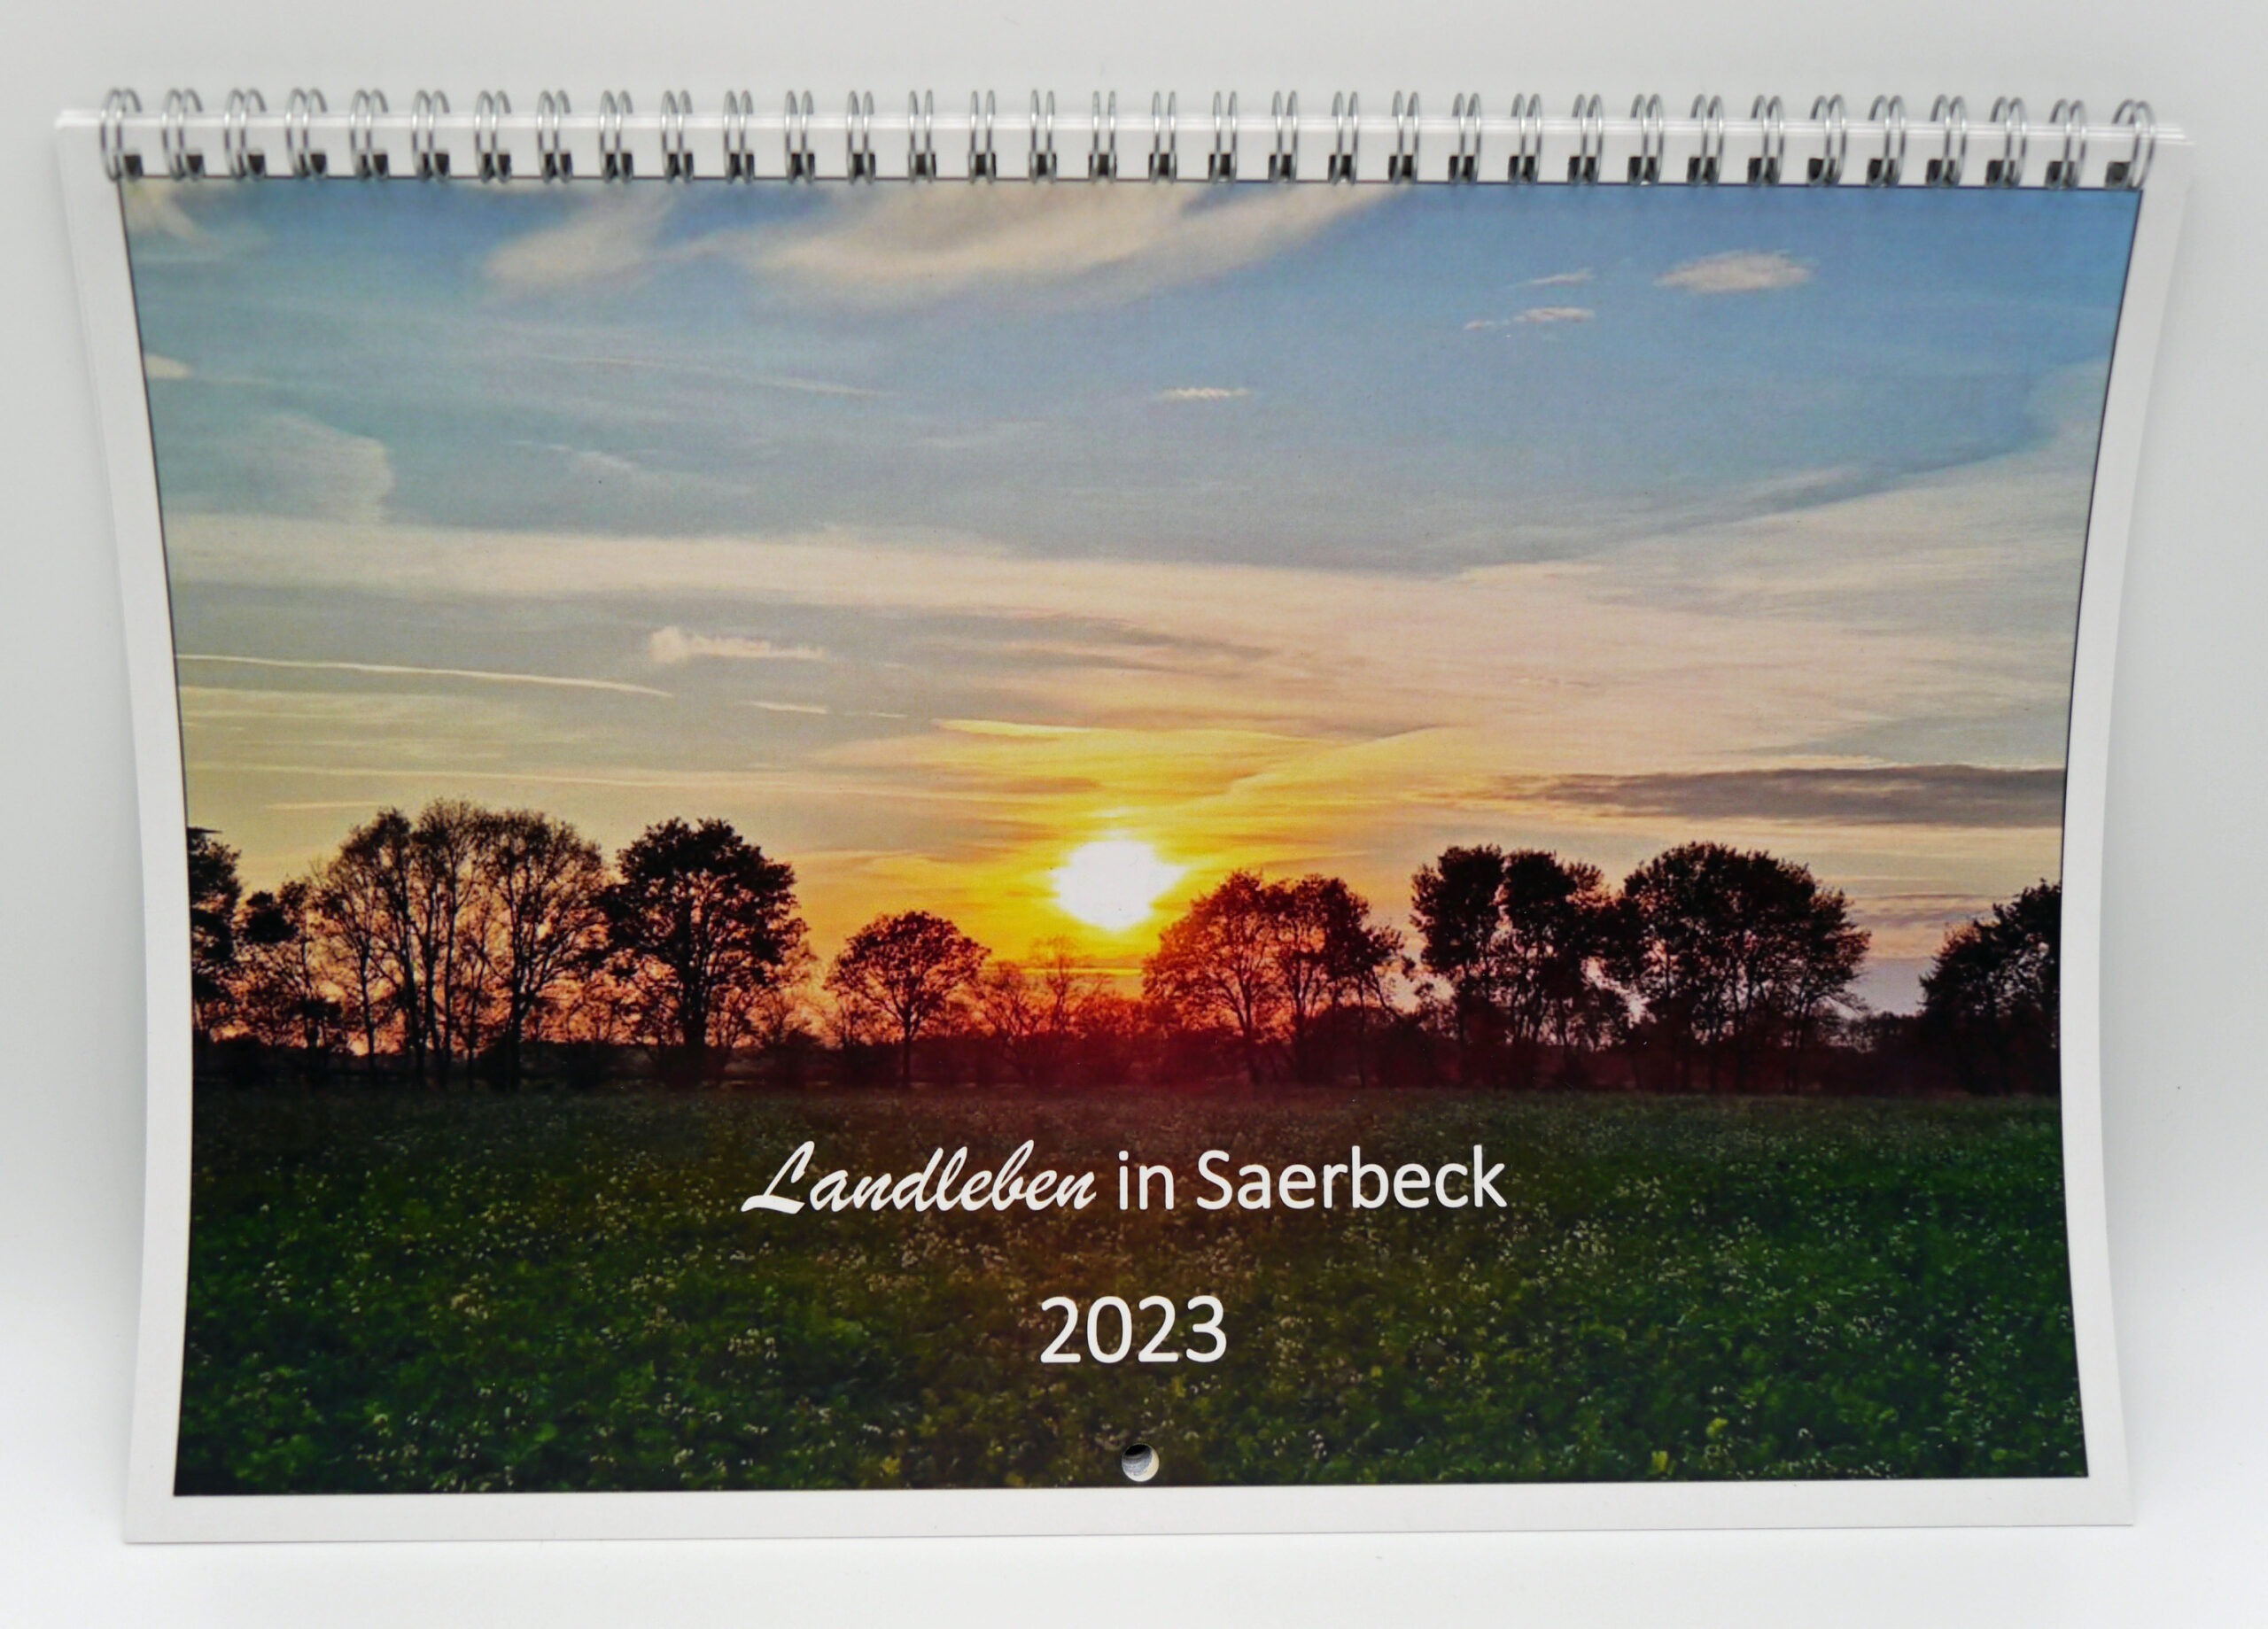 Jahreskalender 2023<br />
Landleben in Saerbeck